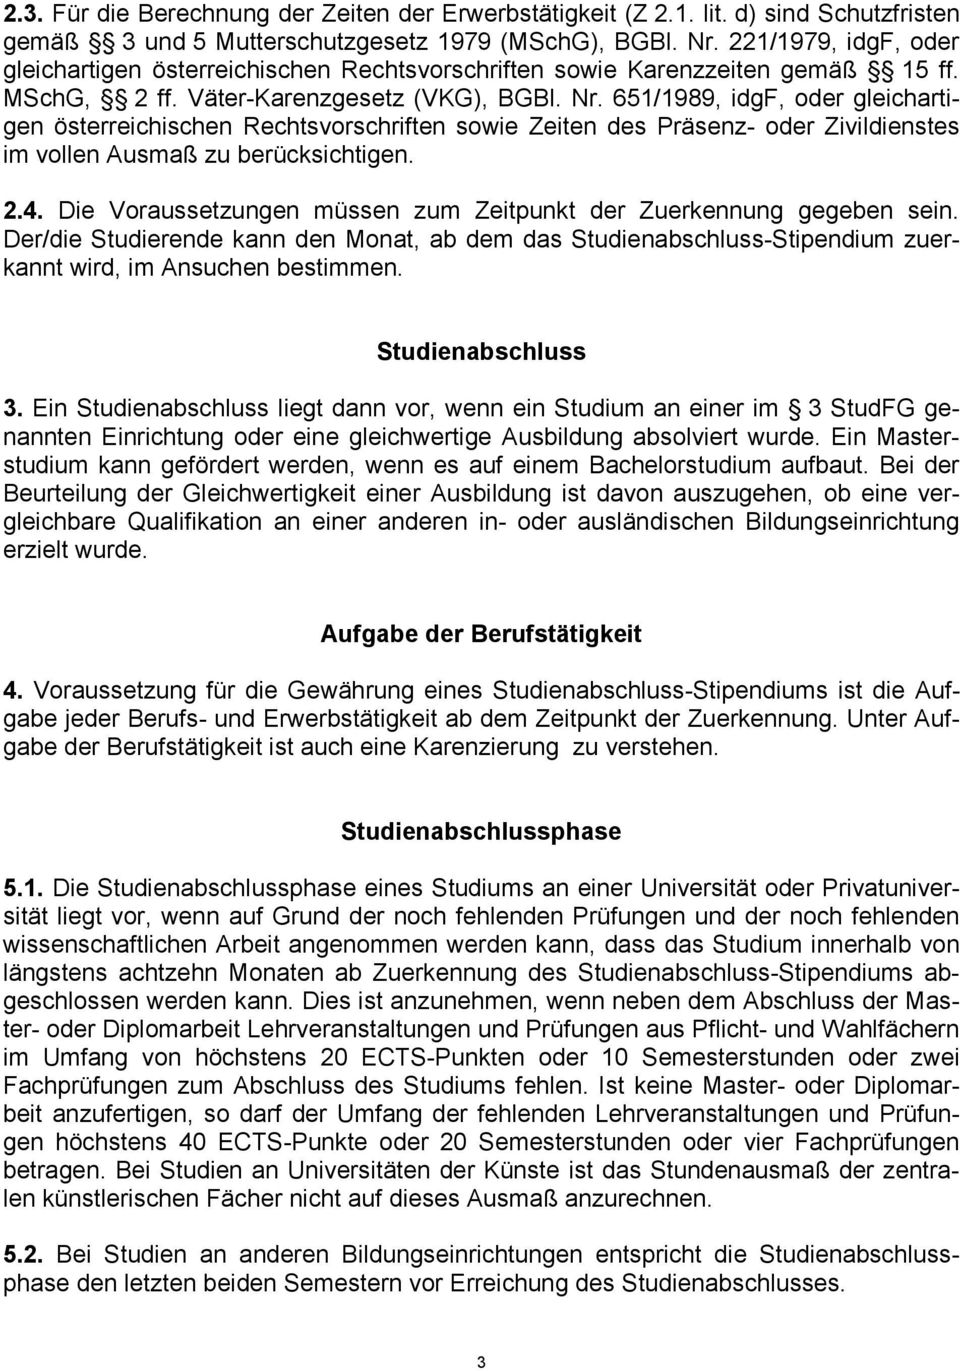 651/1989, idgf, oder gleichartigen österreichischen Rechtsvorschriften sowie Zeiten des Präsenz- oder Zivildienstes im vollen Ausmaß zu berücksichtigen. 2.4.